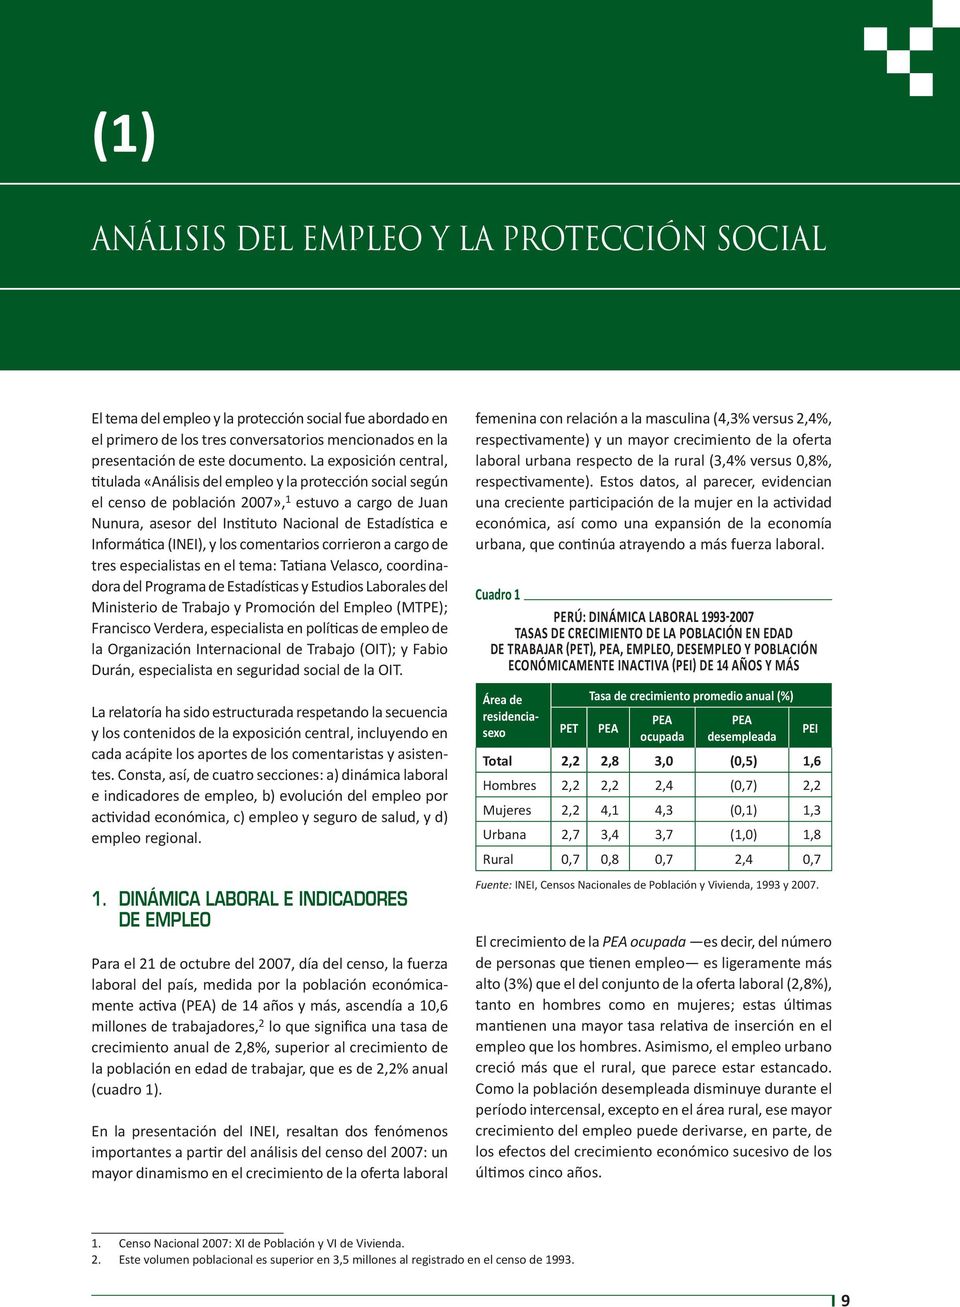 La exposición central, titulada «Análisis del empleo y la protección social según el censo de población 2007», 1 estuvo a cargo de Juan Nunura, asesor del Instituto Nacional de Estadística e